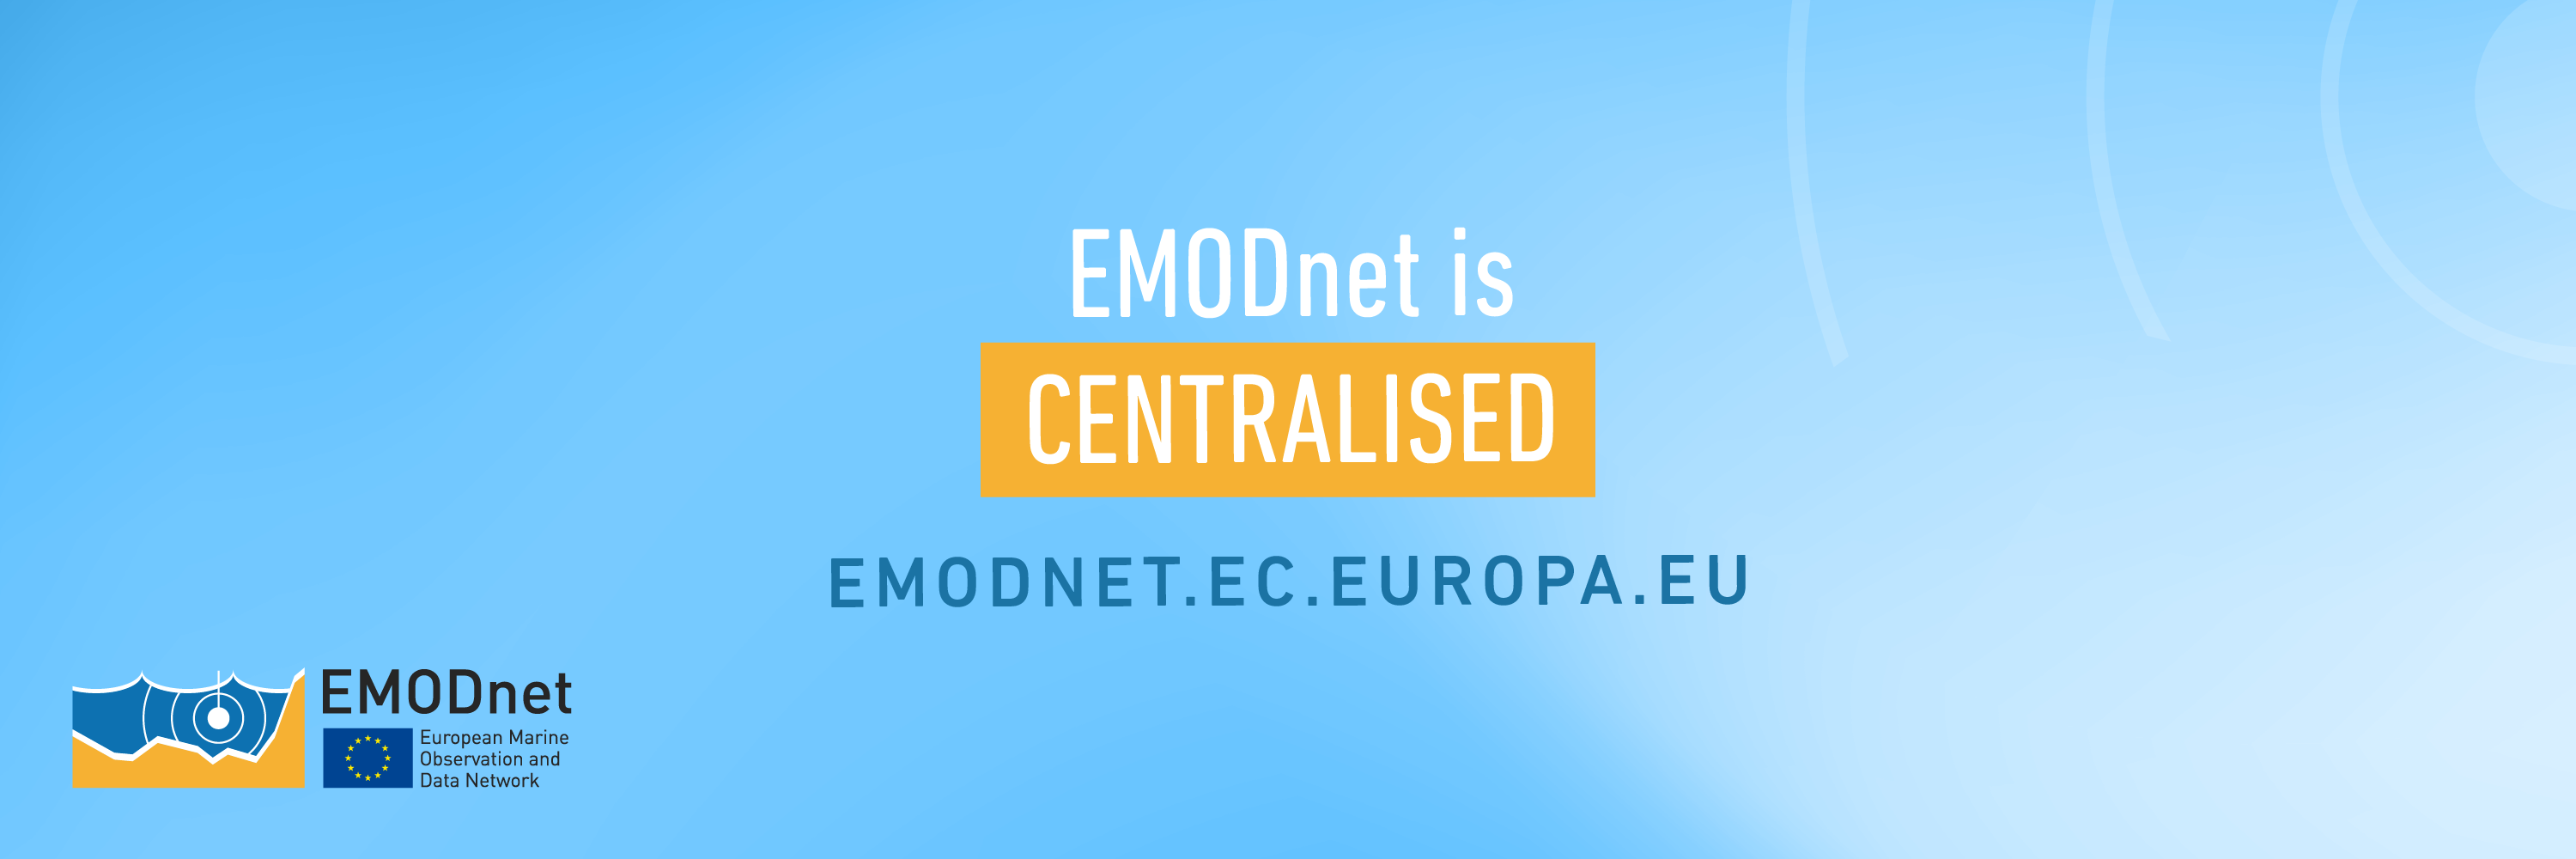 EMODnet centralisation